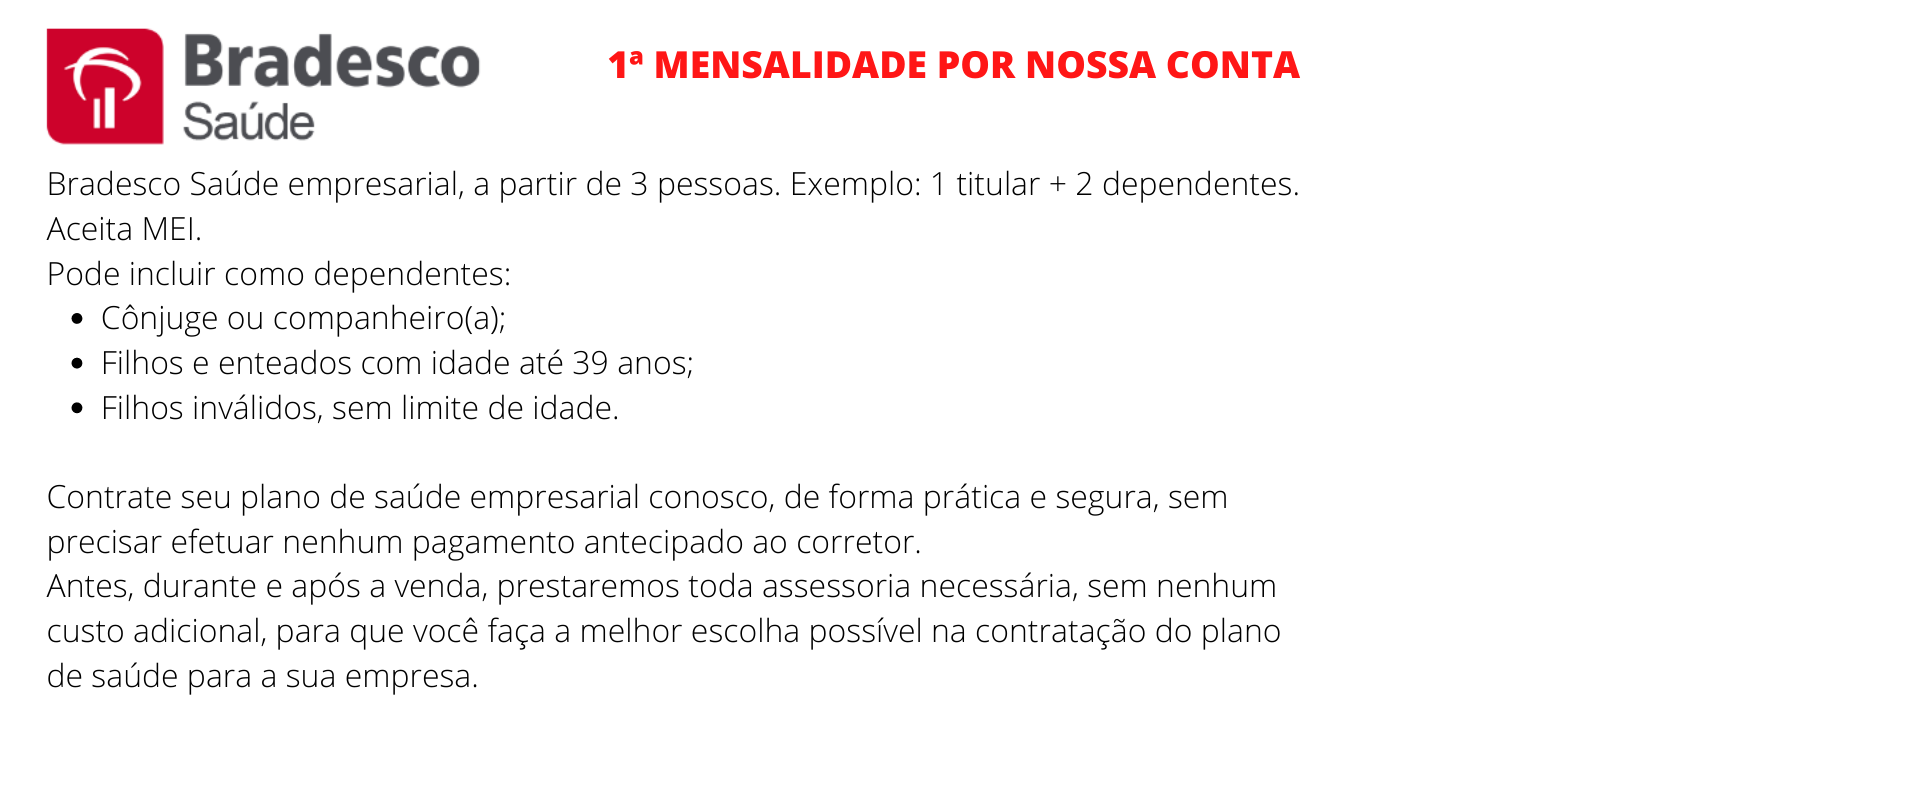 Bradesco Saúde Empresarial - Artur Nogueira 